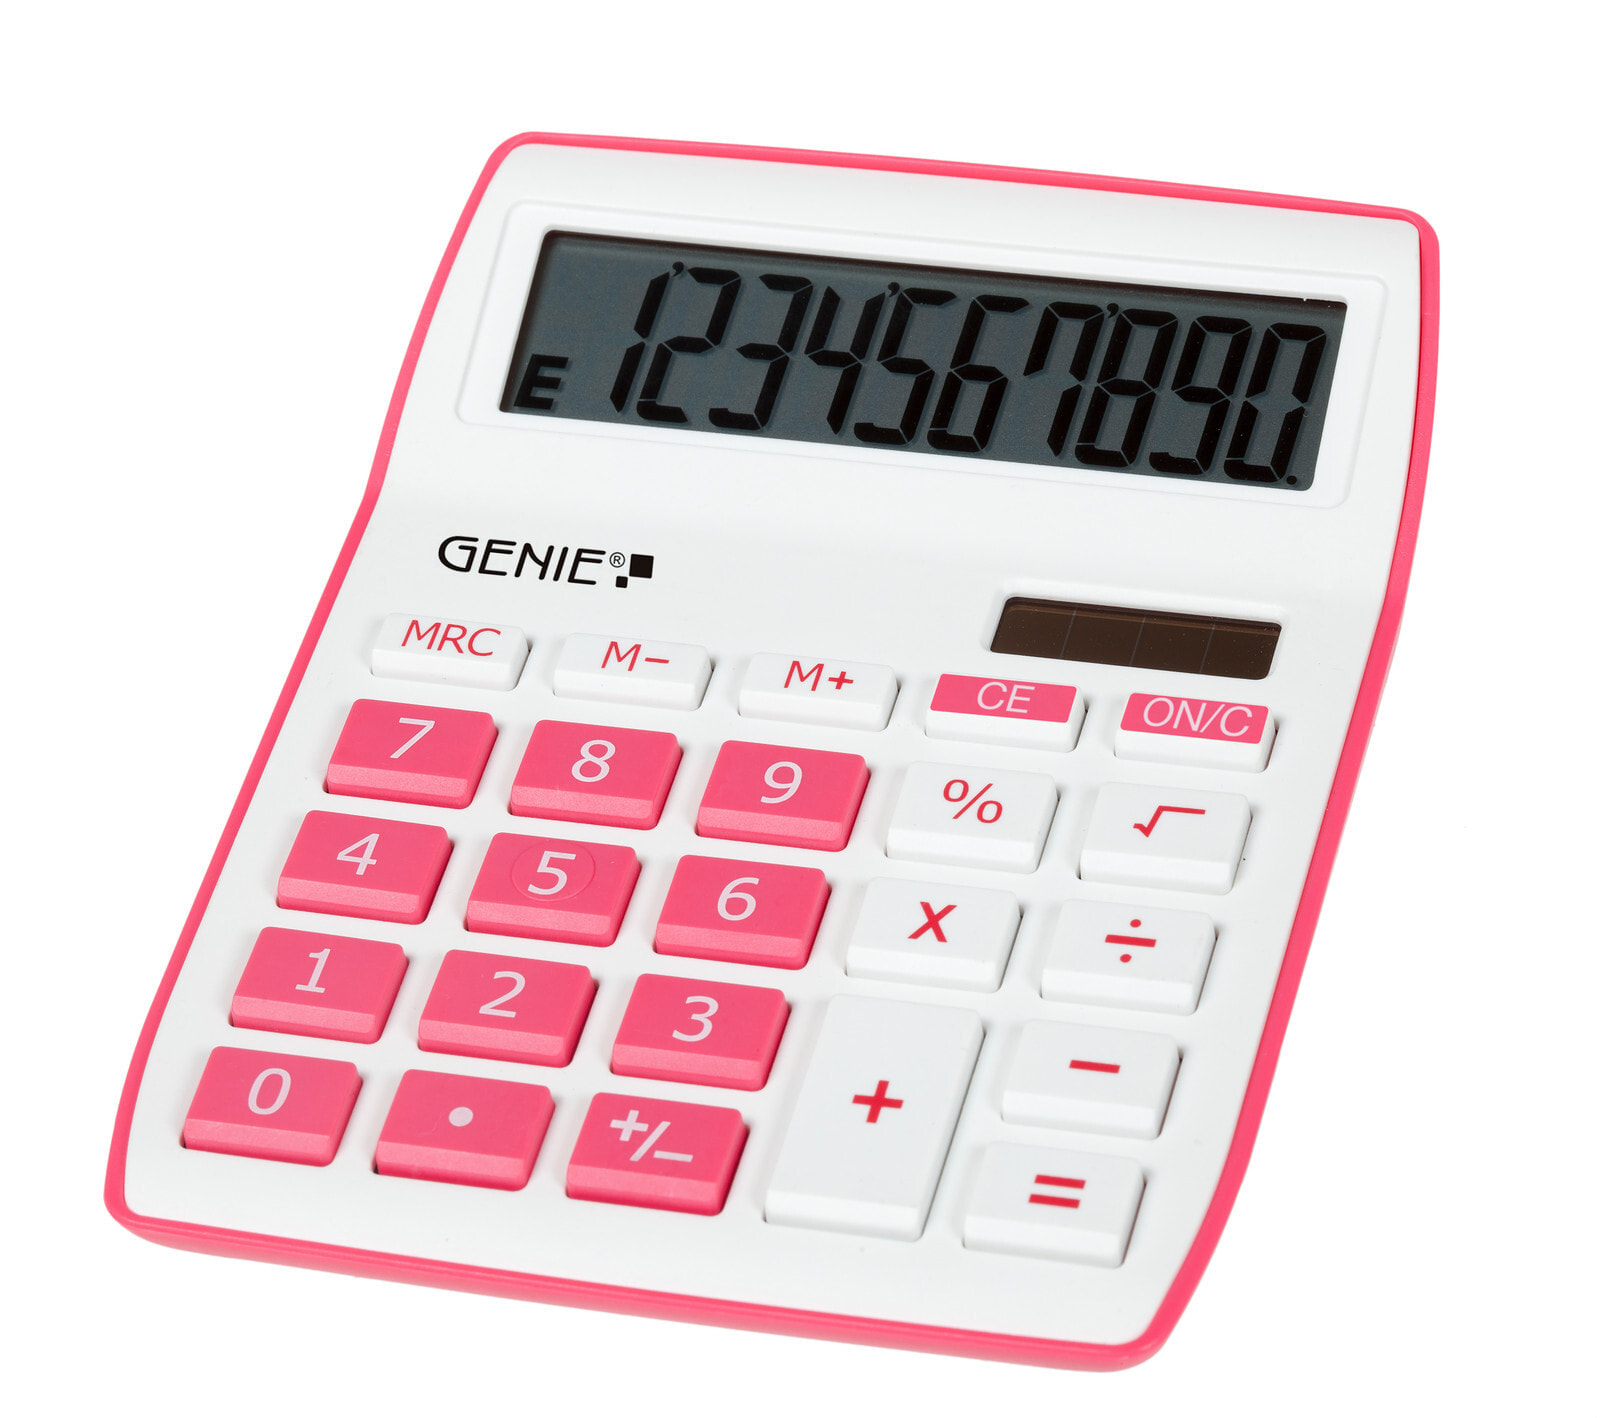 Genie 840 P калькулятор Настольный Дисплей Розовый, Белый 12264